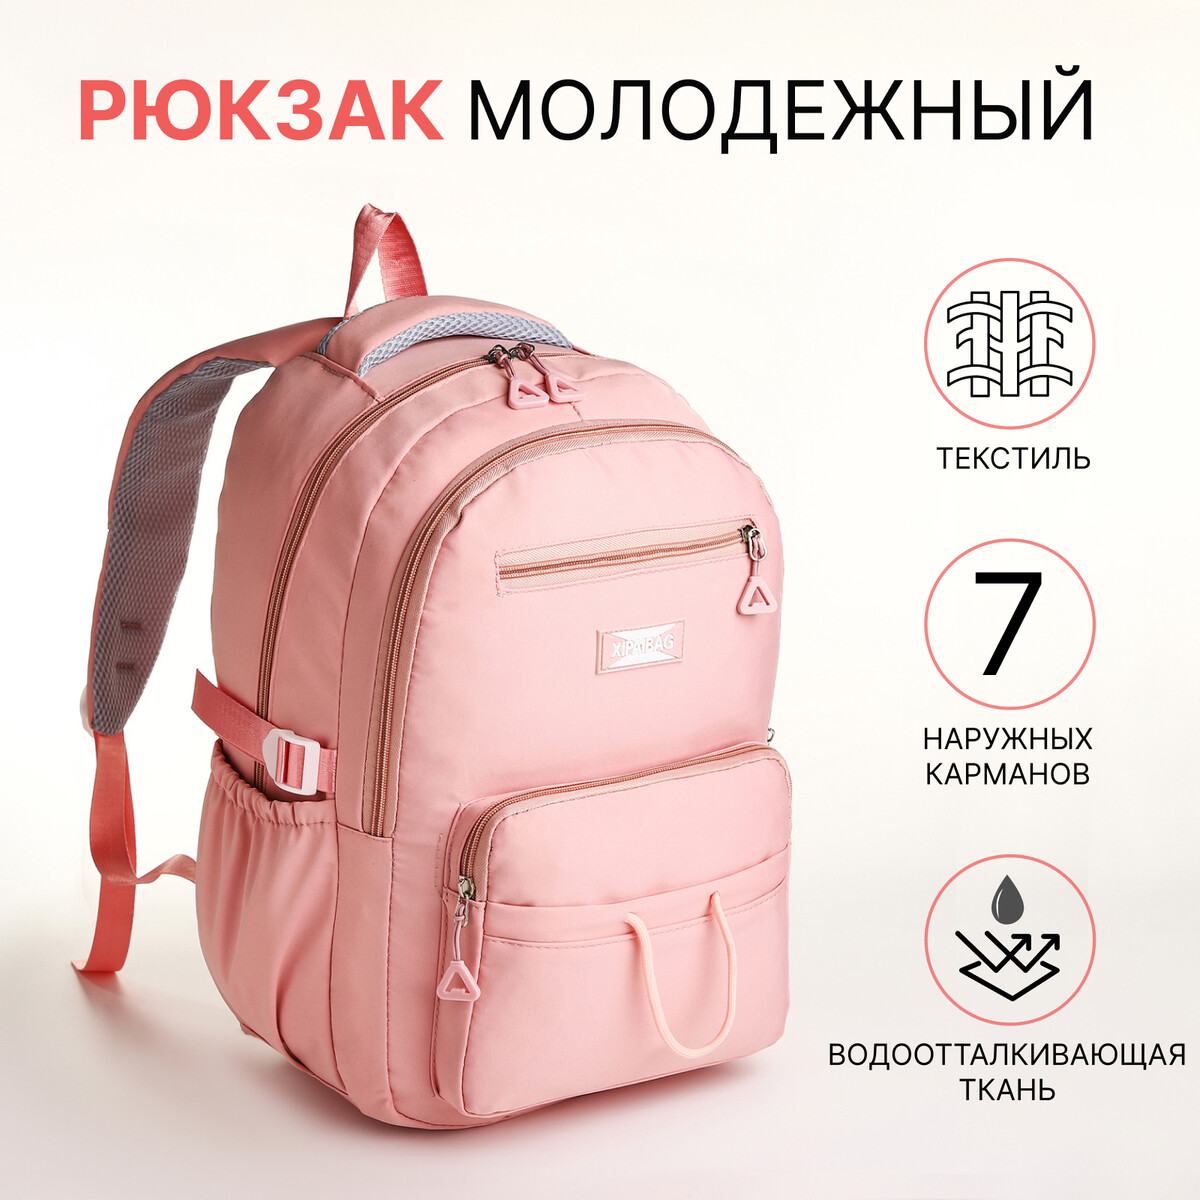 Рюкзак школьный из текстиля на молнии, 7 карманов, цвет розовый рюкзак школьный из текстиля на молнии 5 карманов розовый